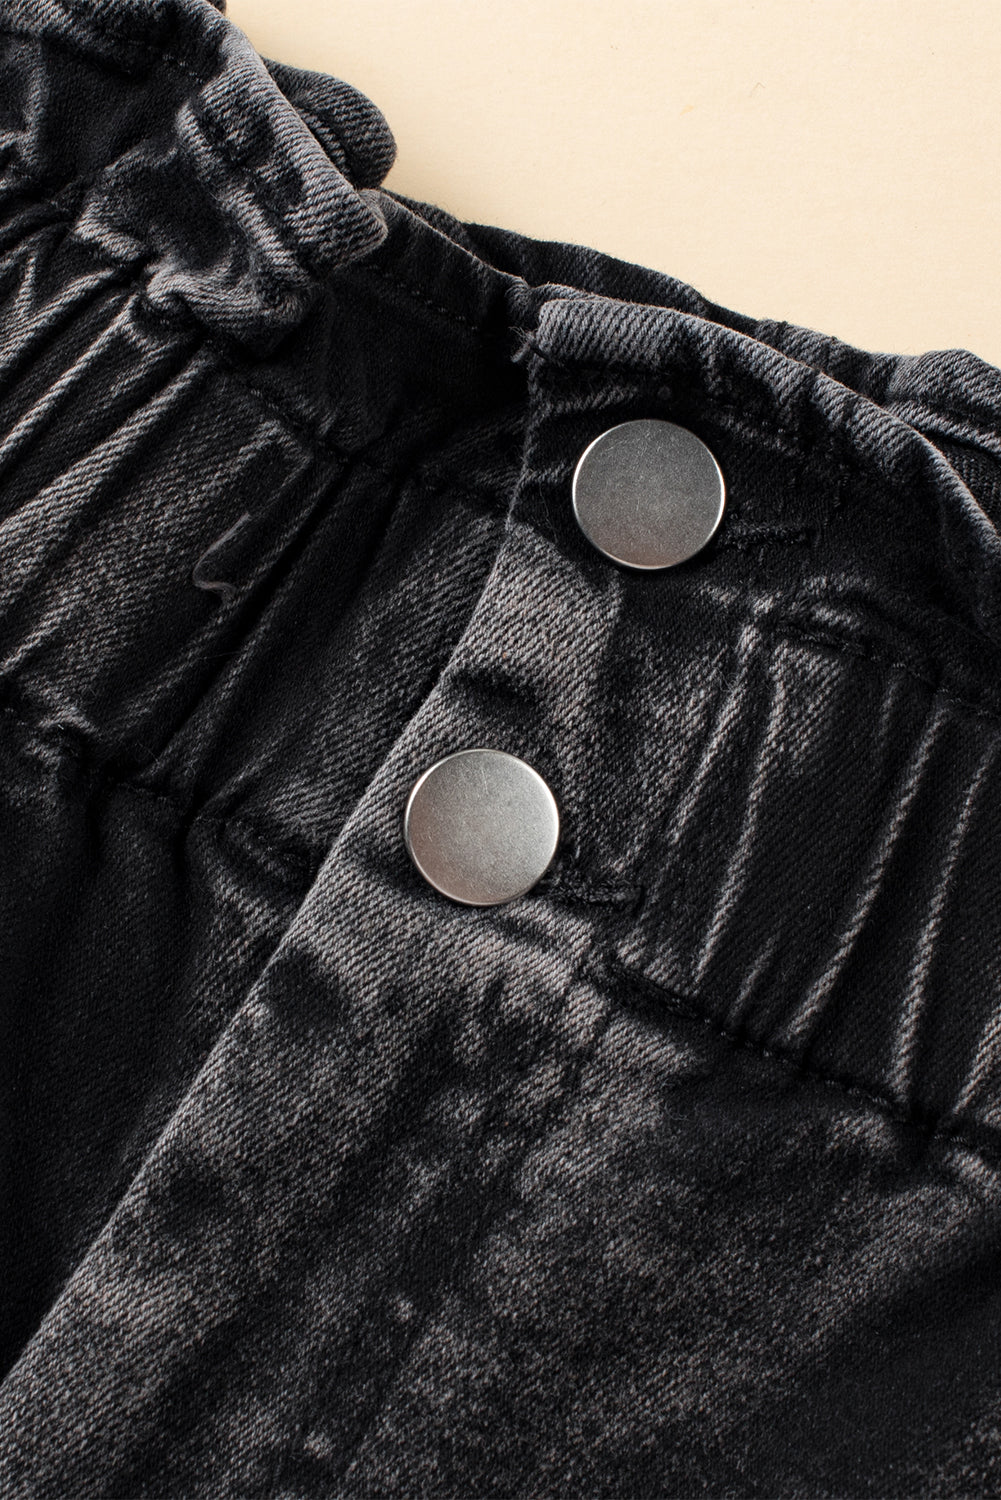 Black Vintage Washed Frilled High Waist Denim Shorts